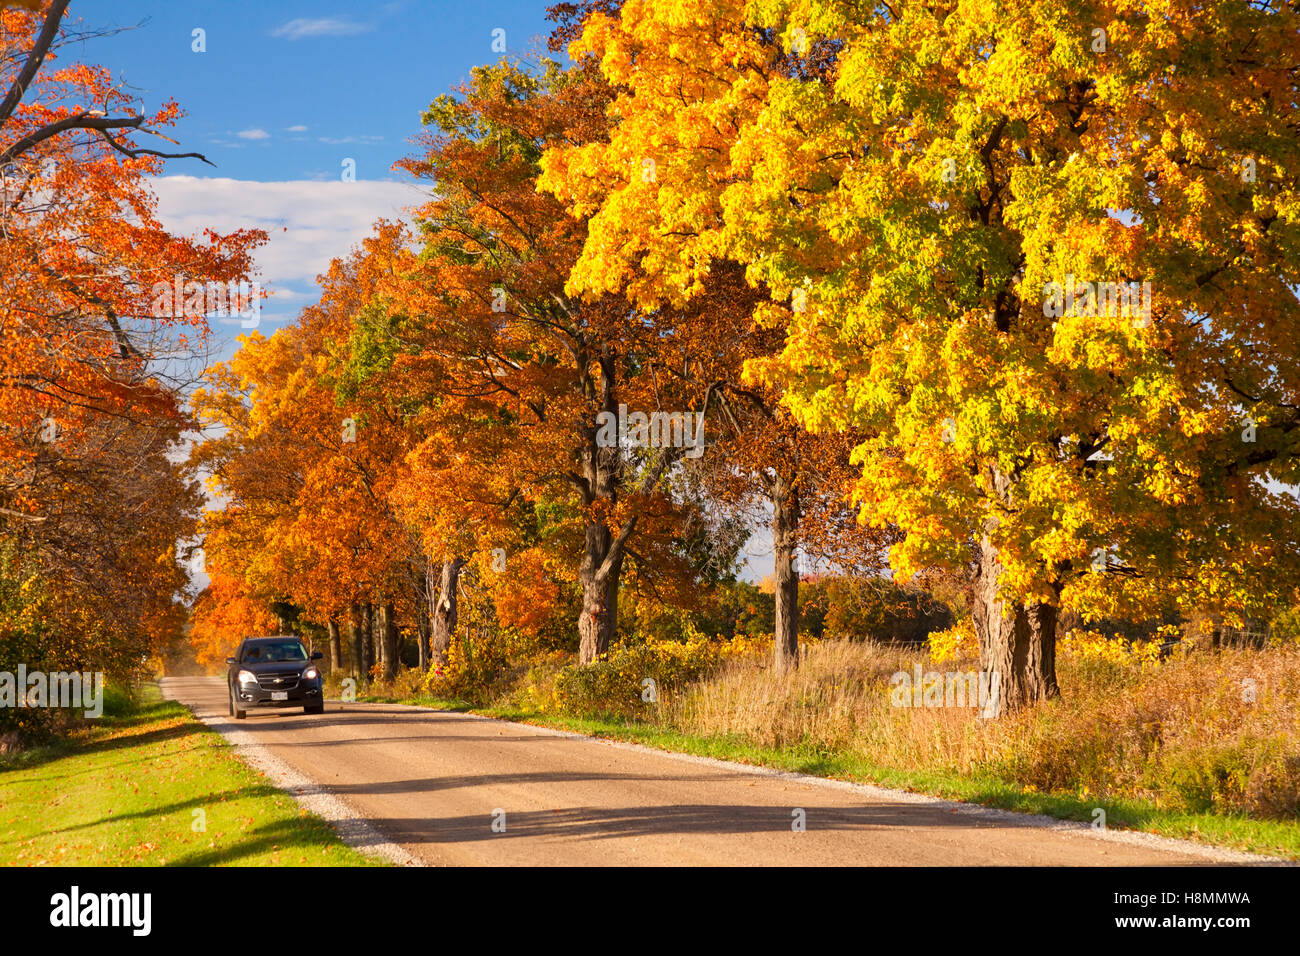 Une voiture roulant sur une route bordée d'affichage des couleurs de l'automne près de Paris, en Ontario, Canada. Banque D'Images